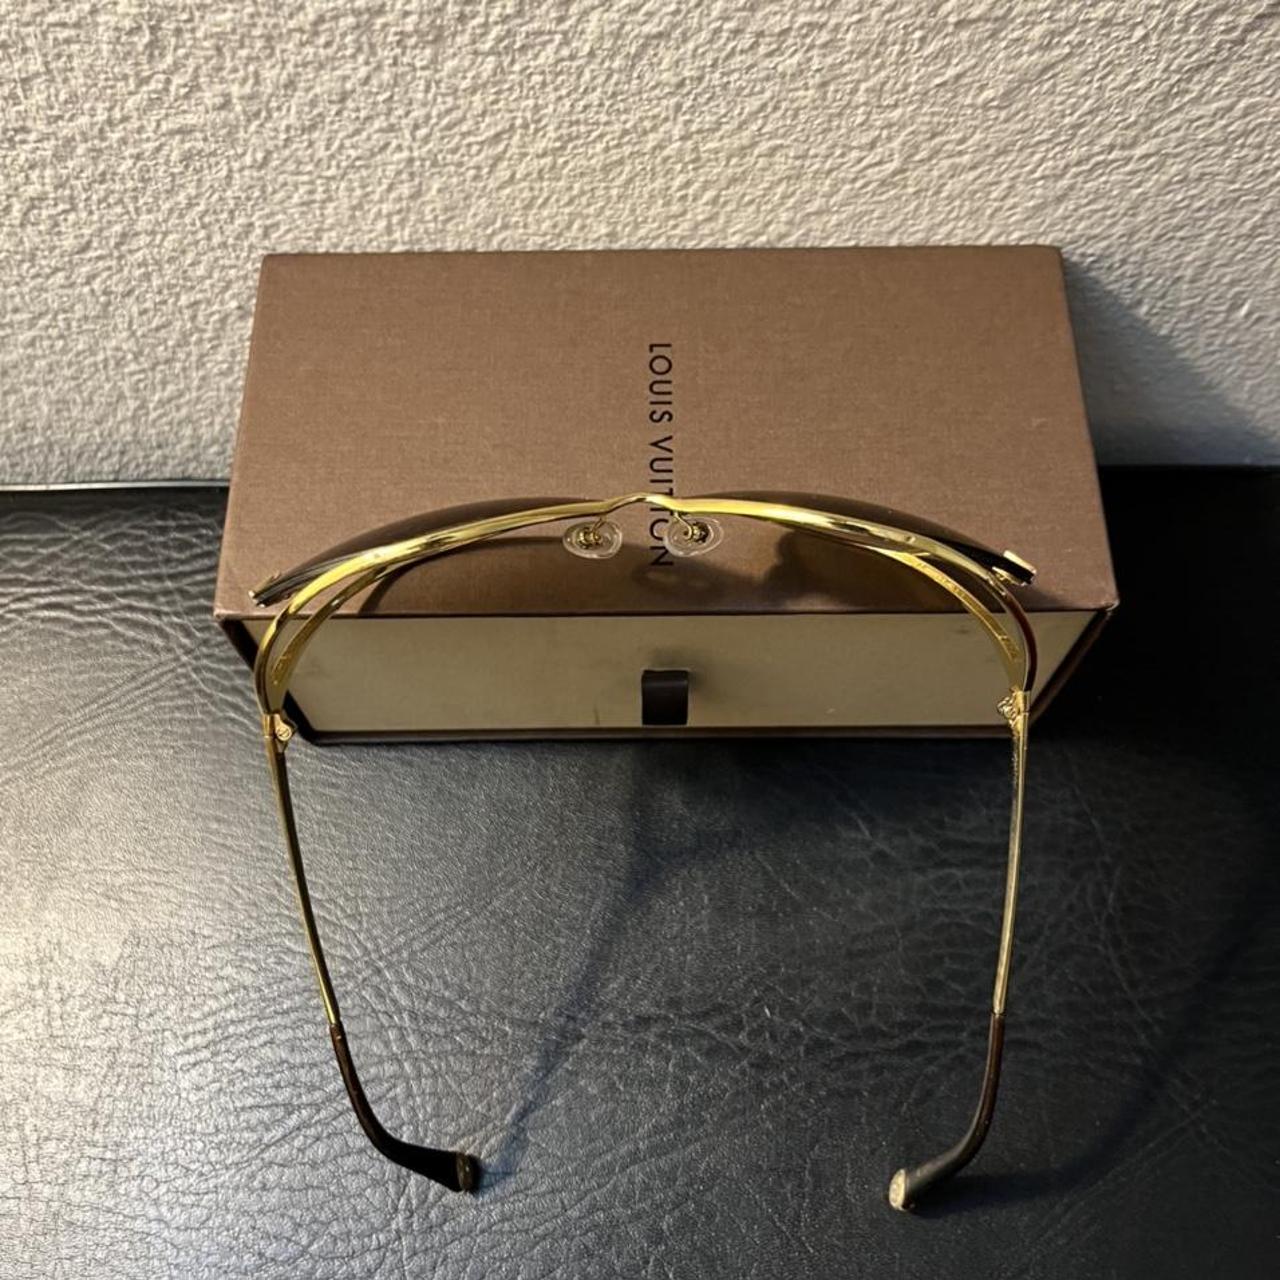 Rare vintage Louis Vuitton Kisslock glasses - Depop